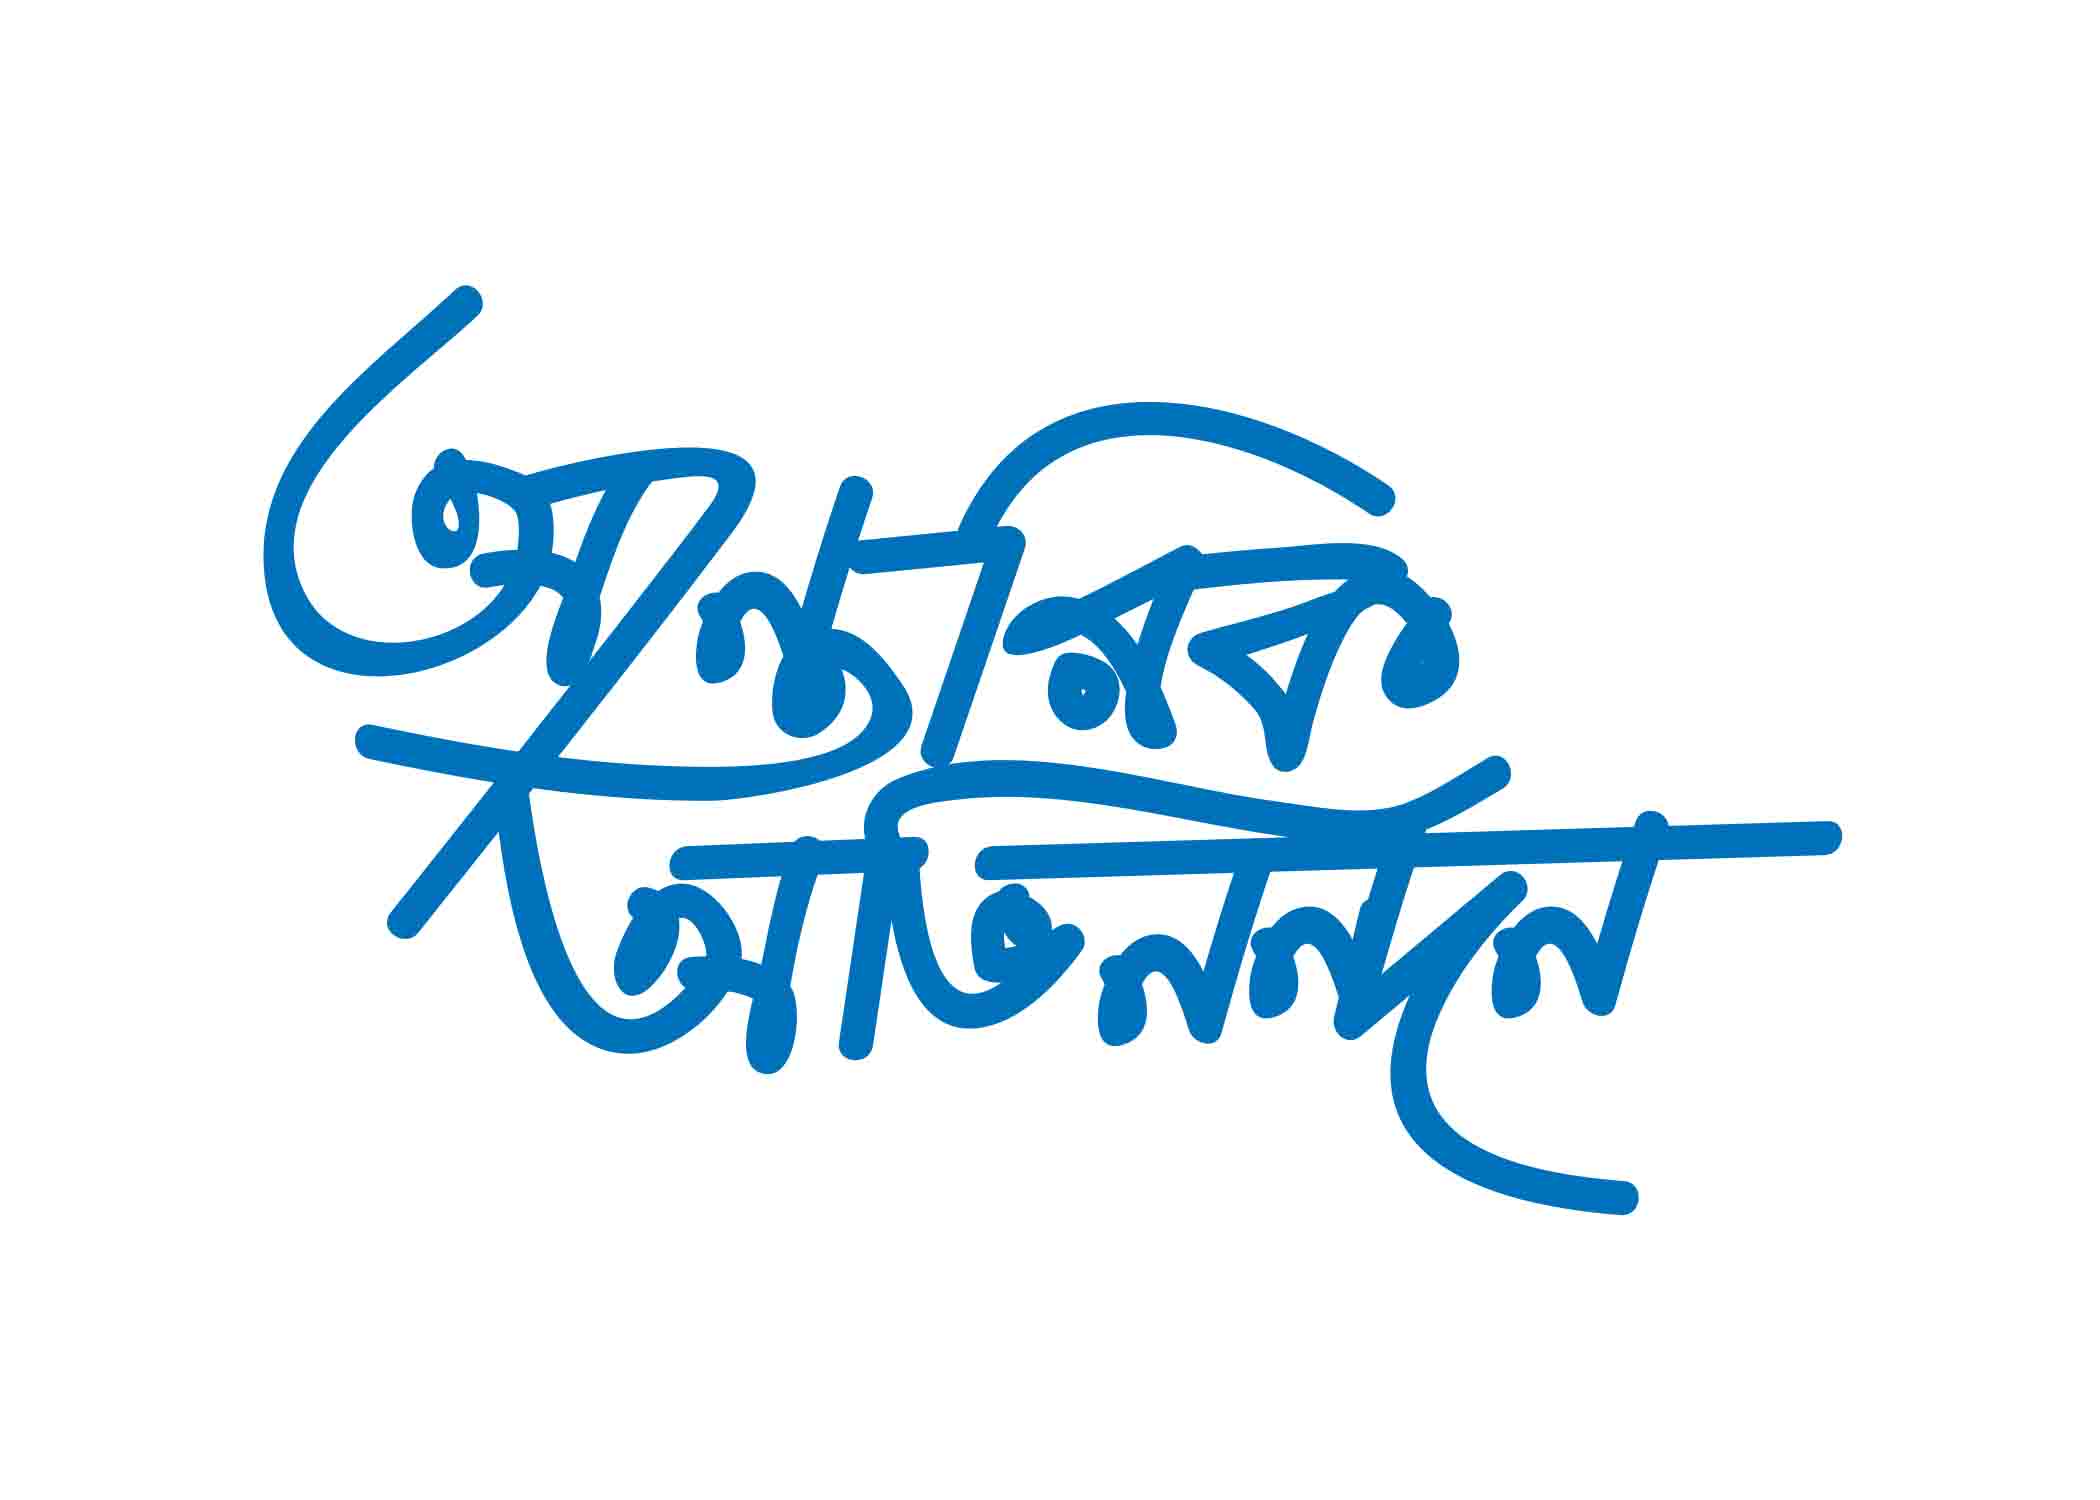 আন্তরিক অভিনন্দন টাইপোগ্রাফি । Bangla Typography PNG